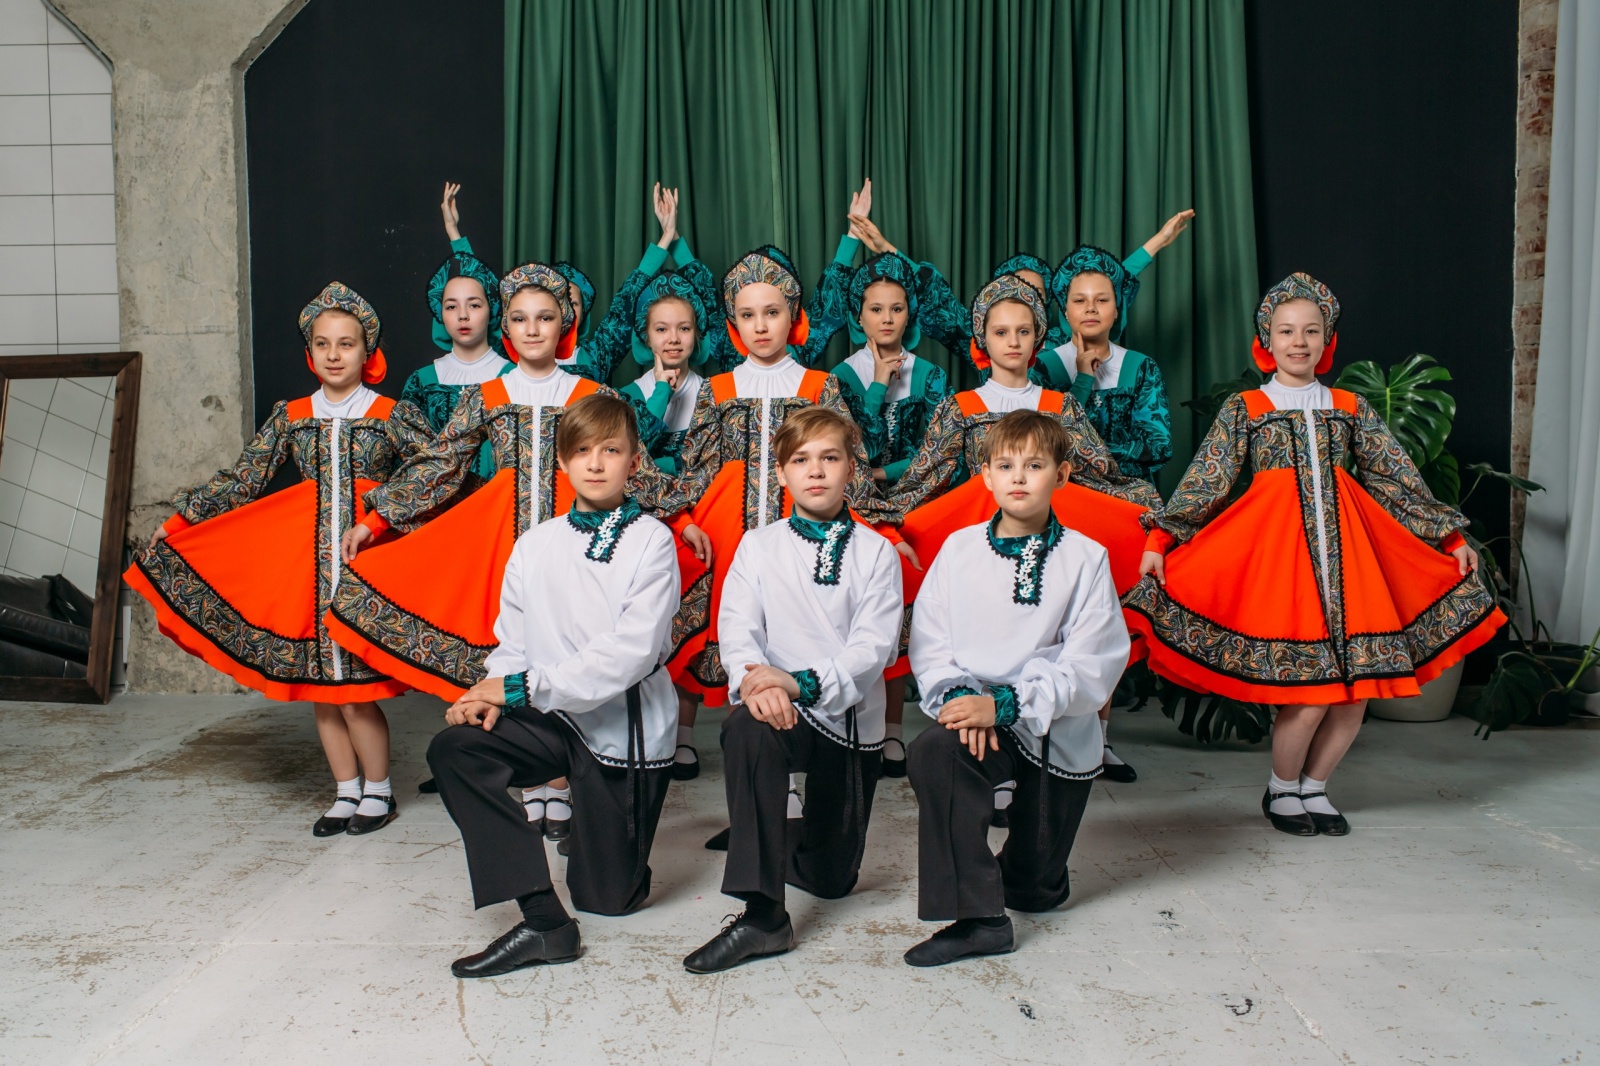 Образцовый детский коллектив ансамбль танца  "Эриданс"  